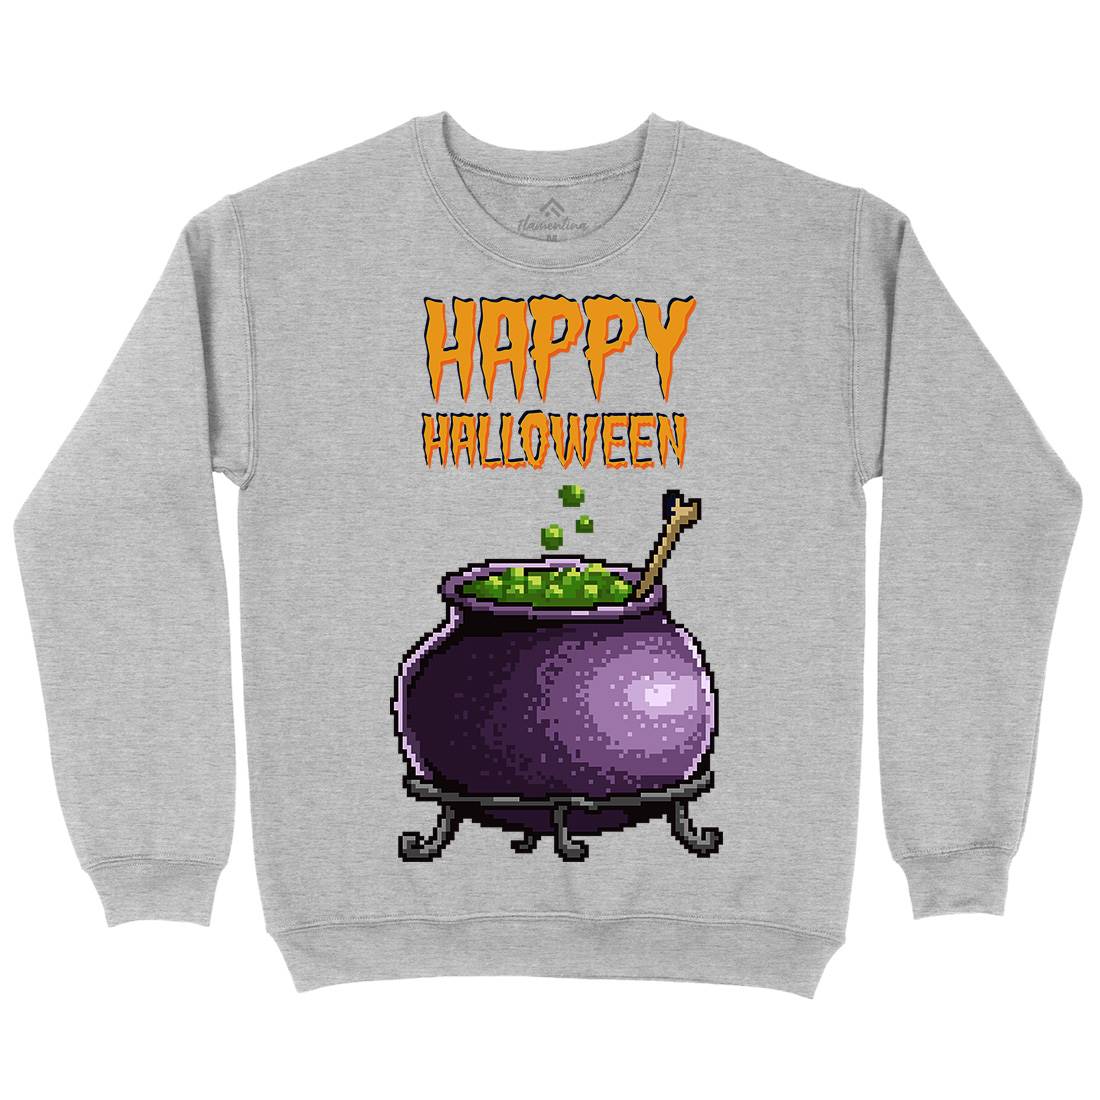 Happy Halloween Kids Crew Neck Sweatshirt Horror B909